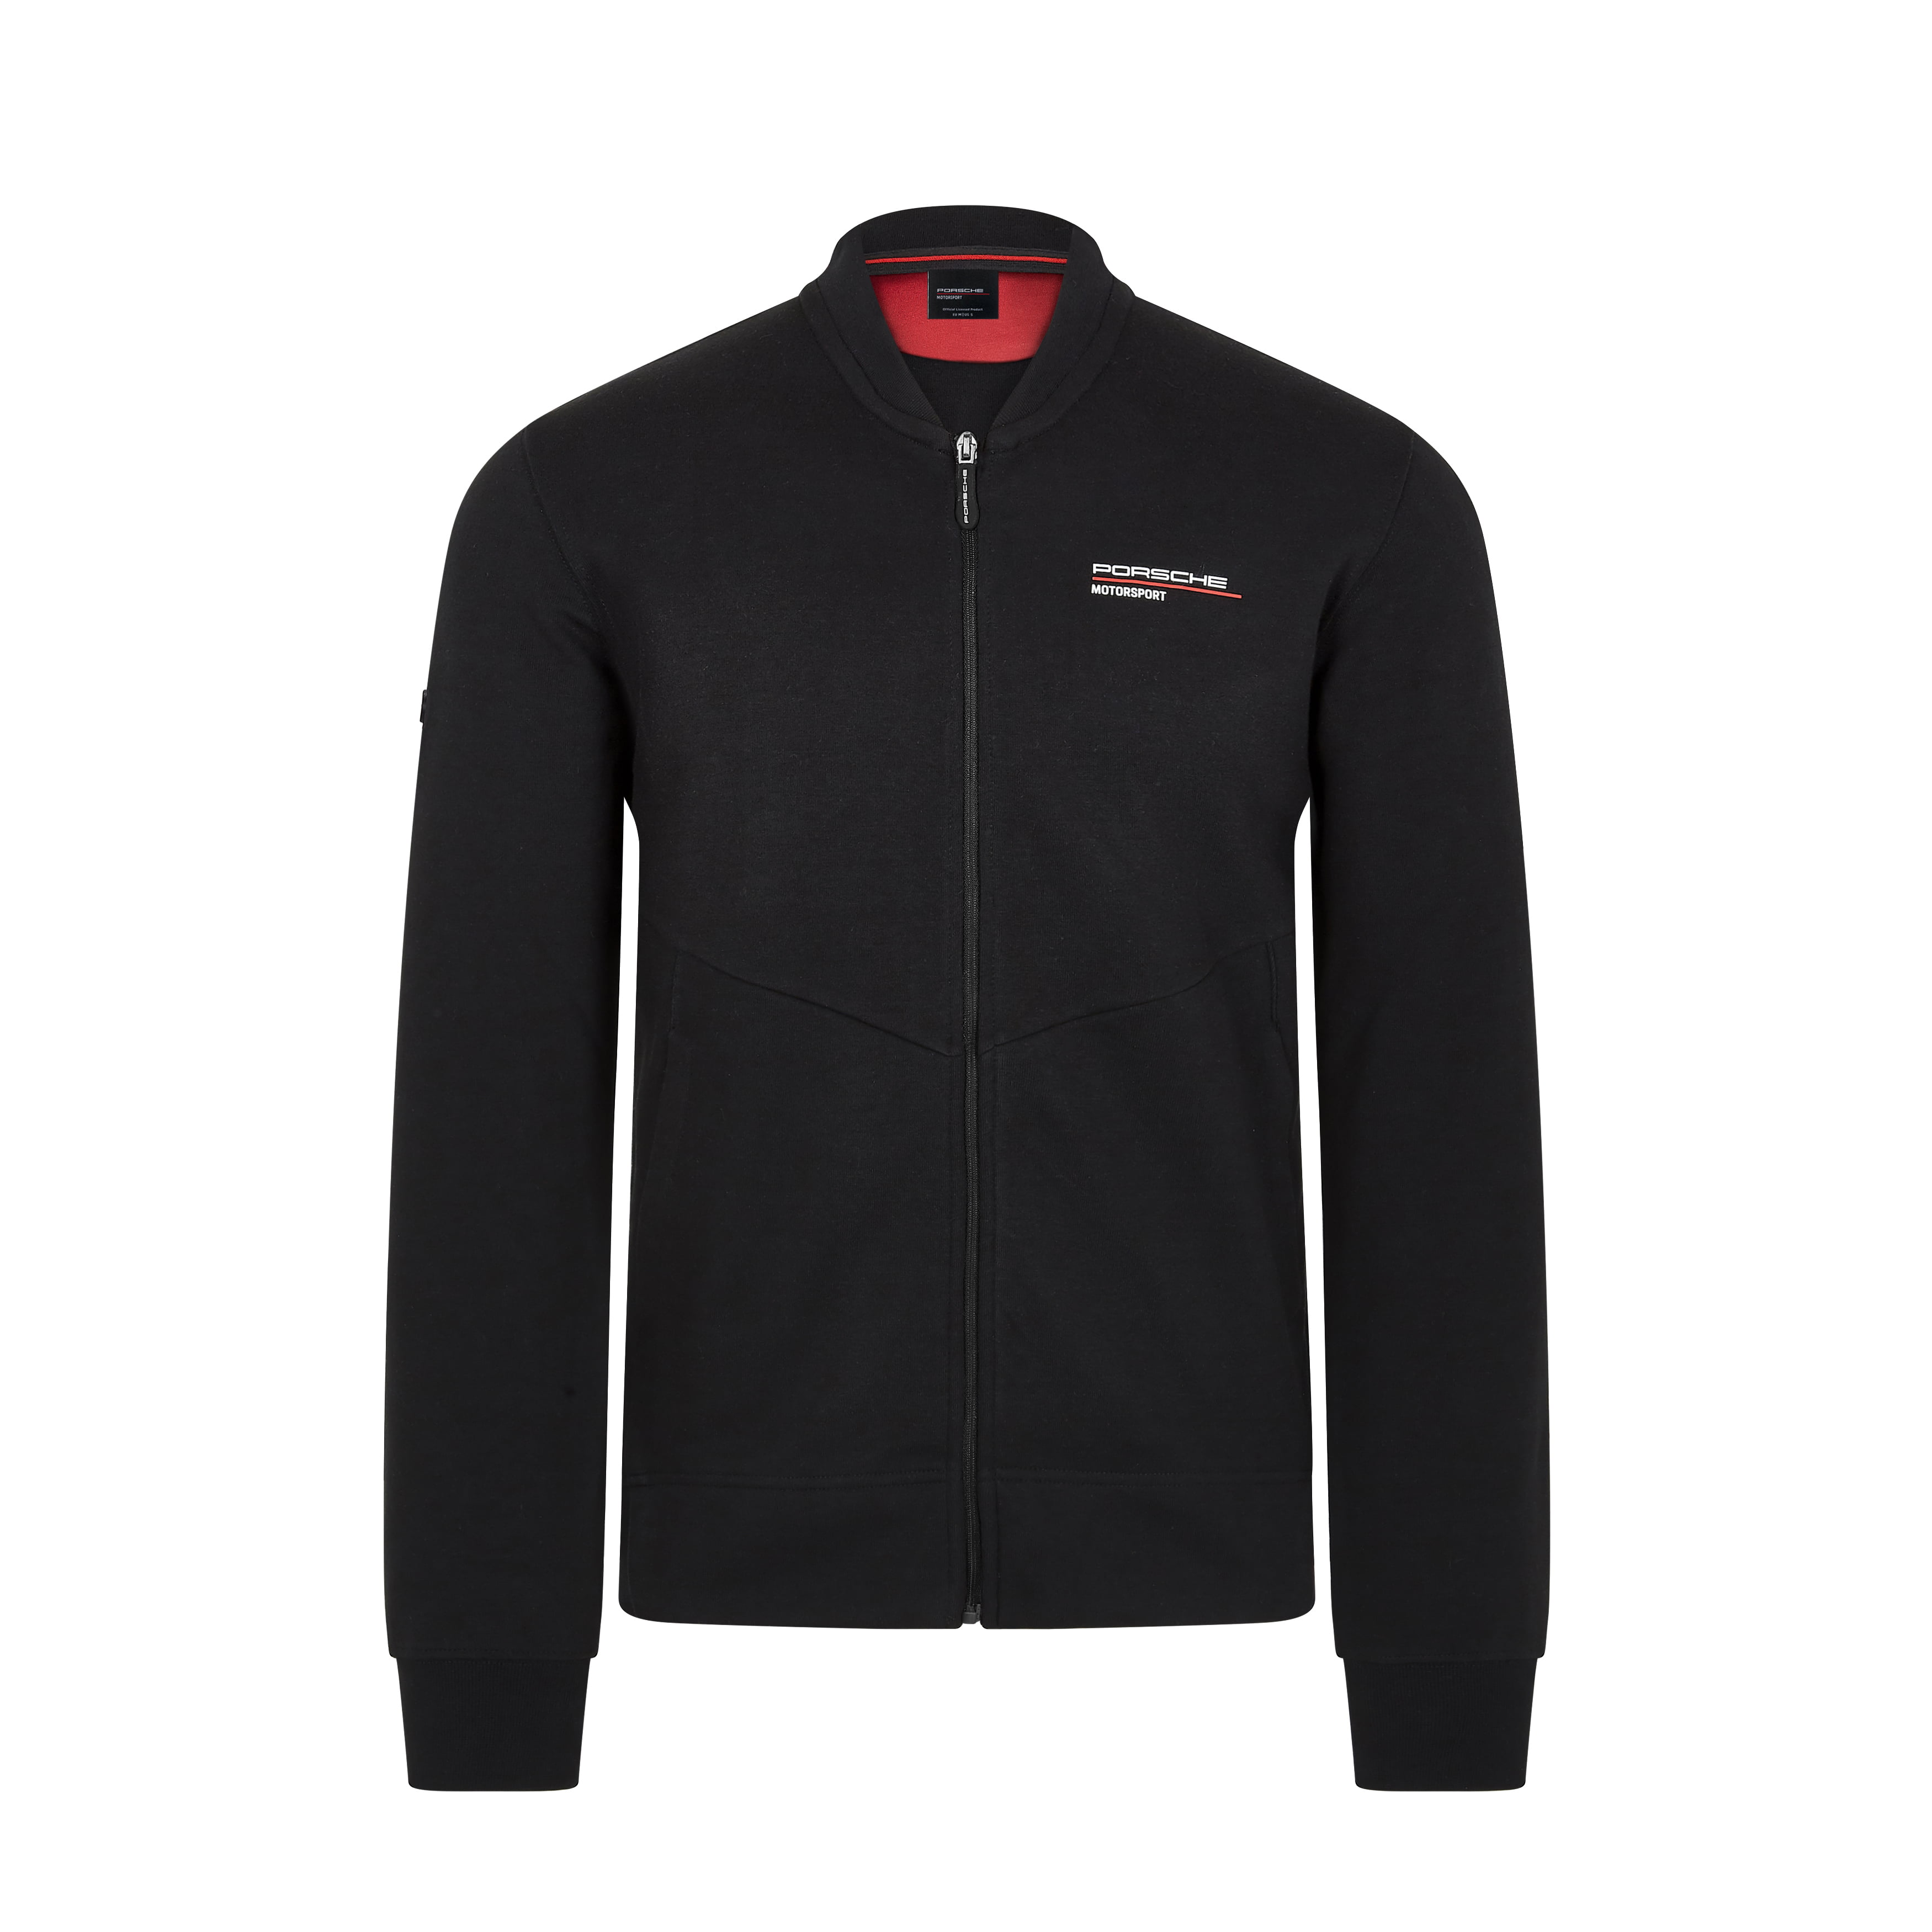 Porsche - Porsche Motorsport Men's Black Zip Sweatshirt (2XL) - Walmart ...